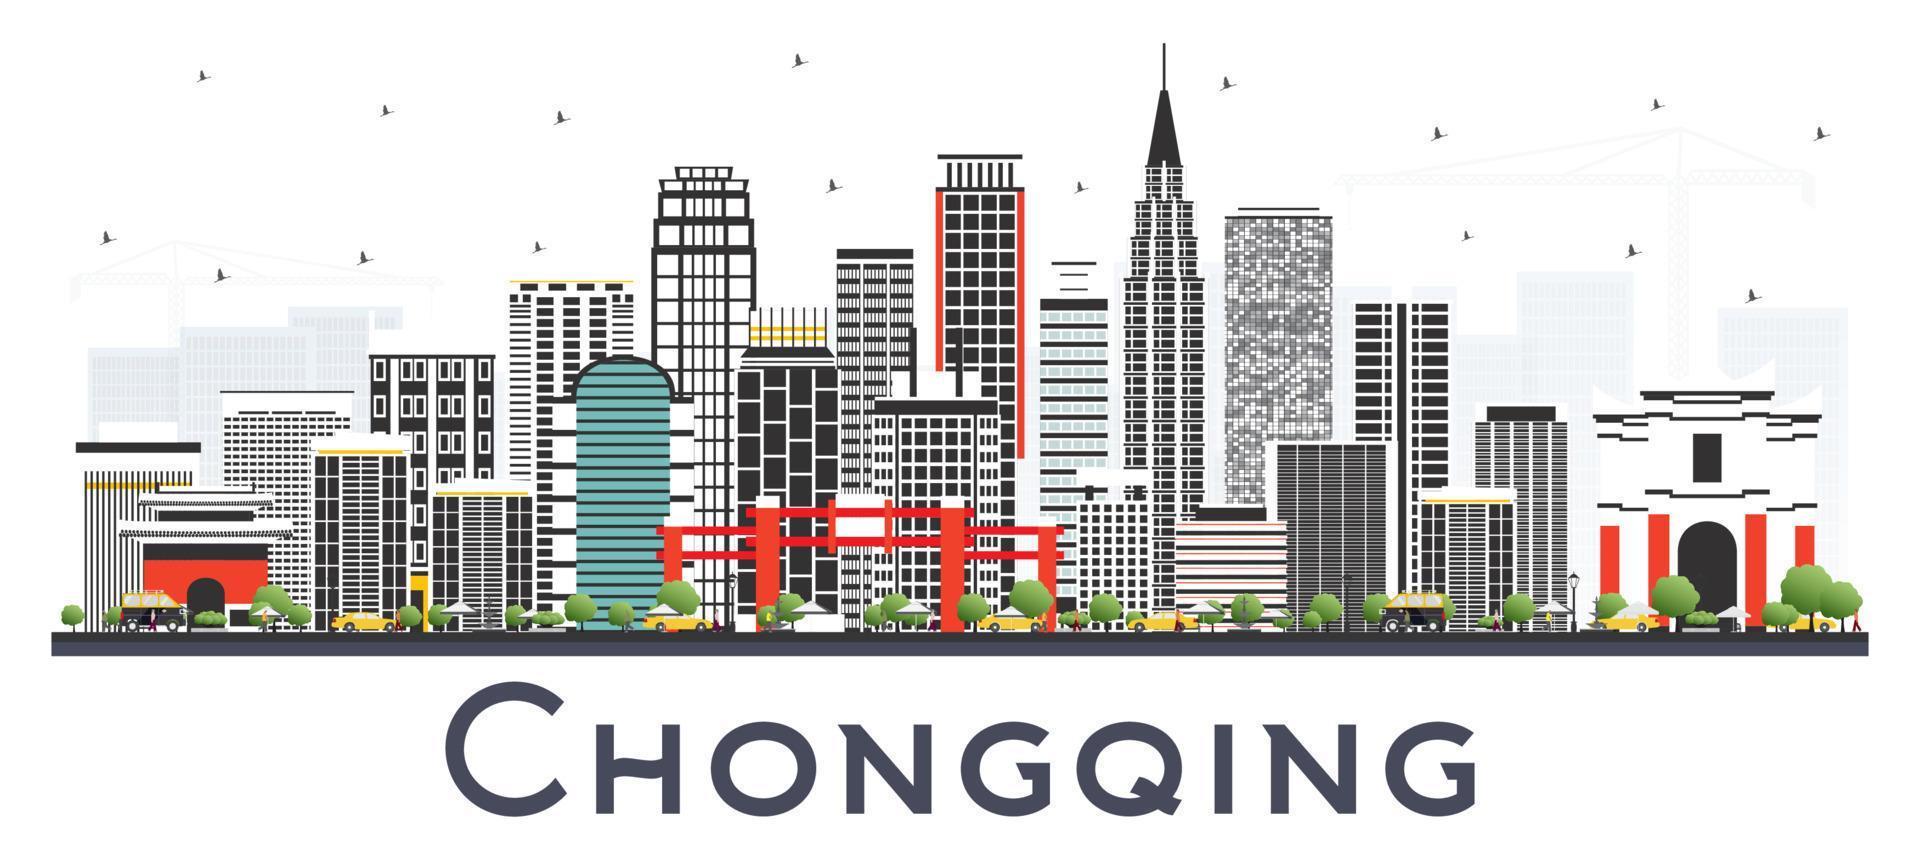 horizonte de la ciudad china de chongqing con edificios grises aislados en blanco. vector